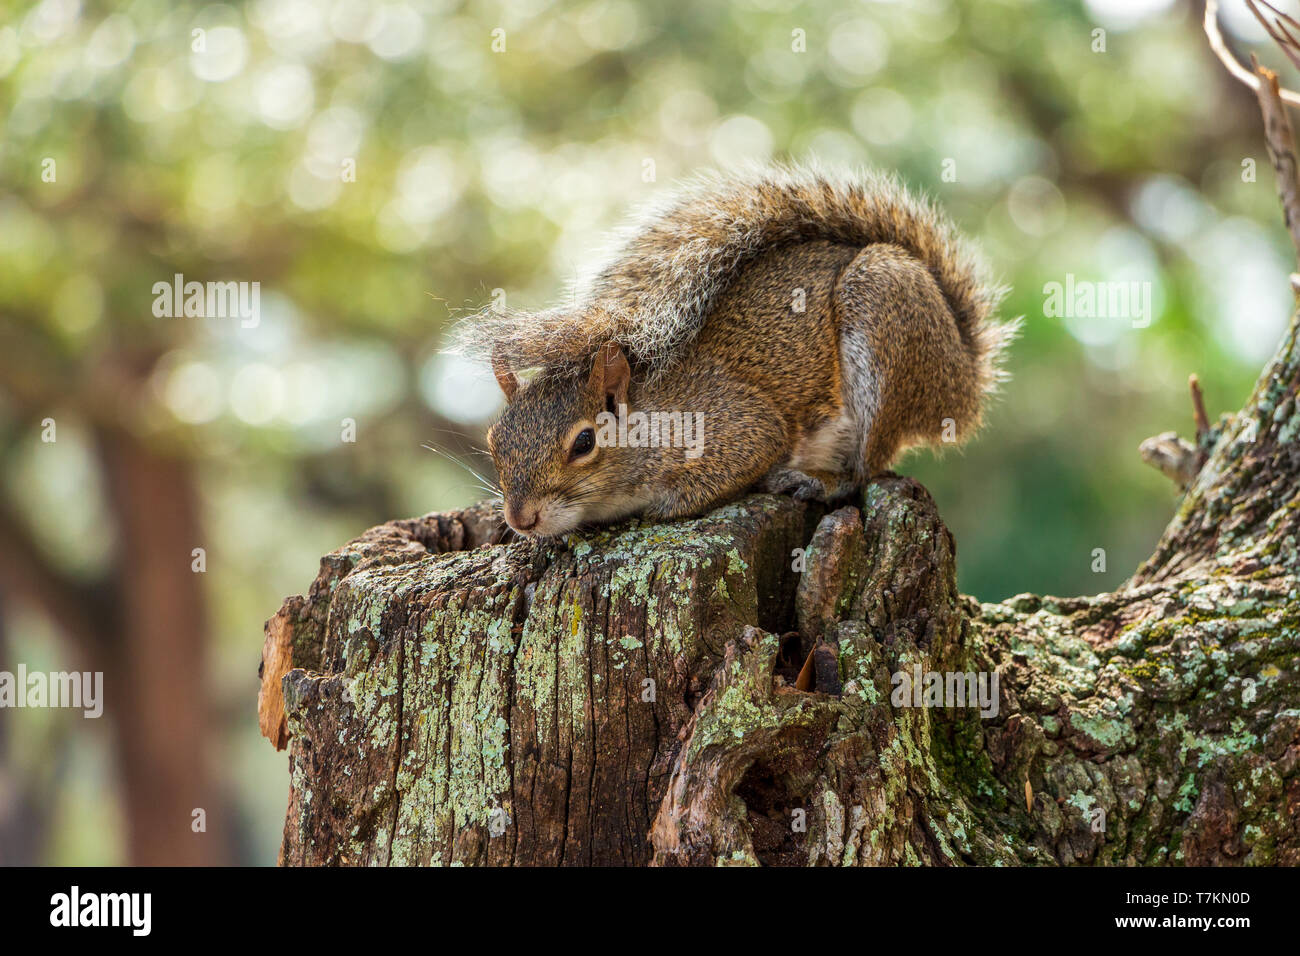 Grigio orientale scoiattolo (Sciurus carolinensis) in posizione difensiva con coda su retro - Topeekeegee Yugnee (TY) Park, Hollywood, Florida, Stati Uniti d'America Foto Stock